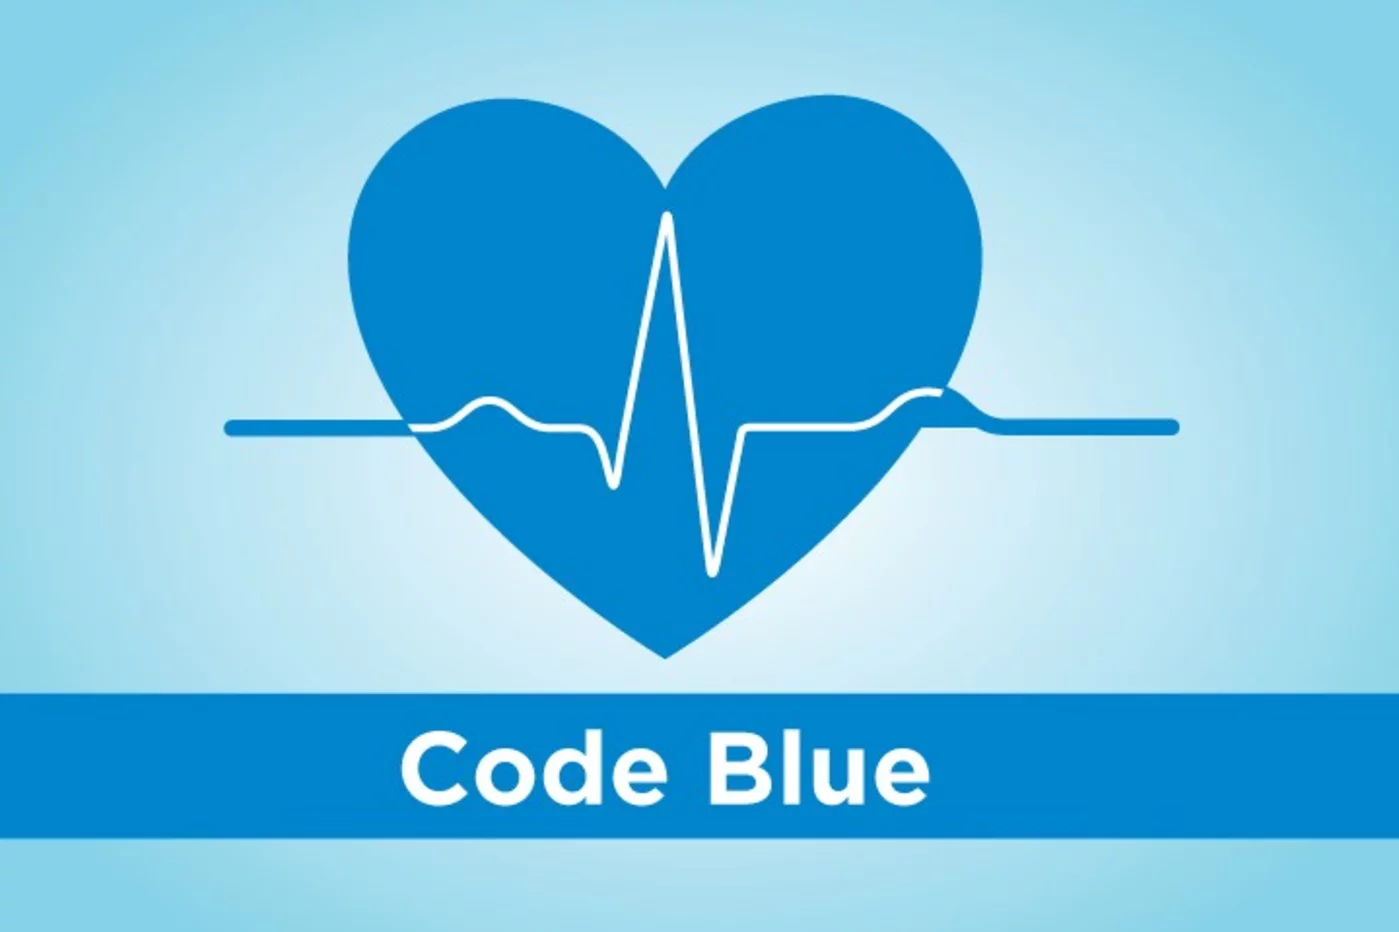 El más conocido de los códigos estadounidenses de colorines es 'code blue', indicativo de parada cardíaca.